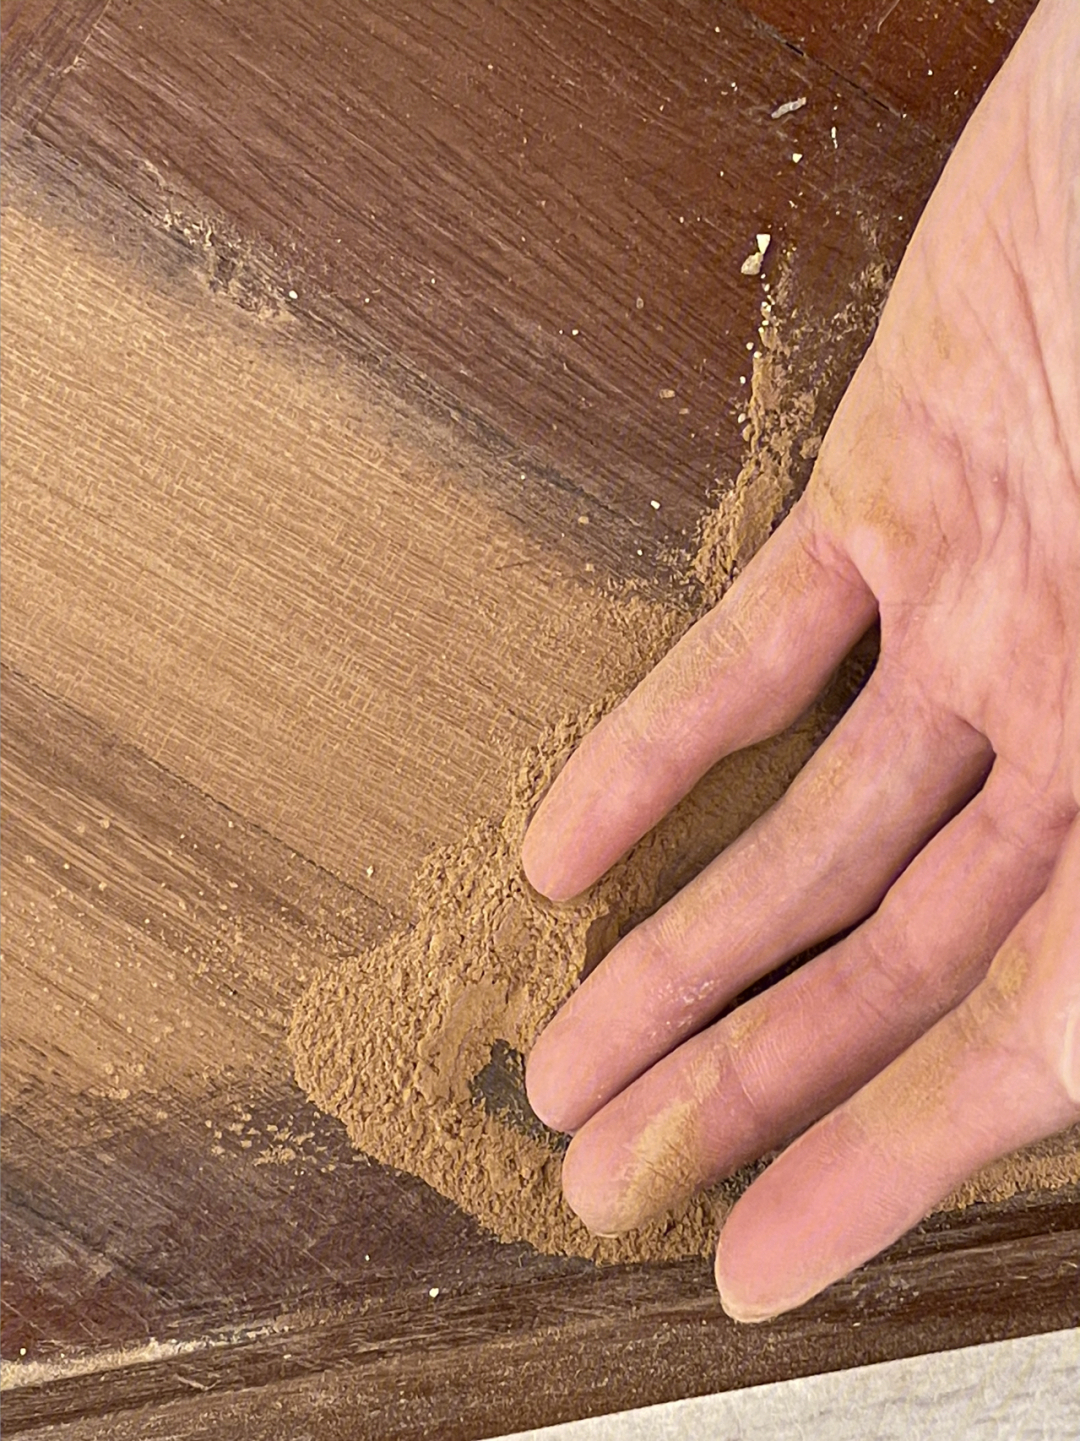 砂纸打完末比一般的木头深很多一种土黄色,还有一股淡淡的清香,用清水